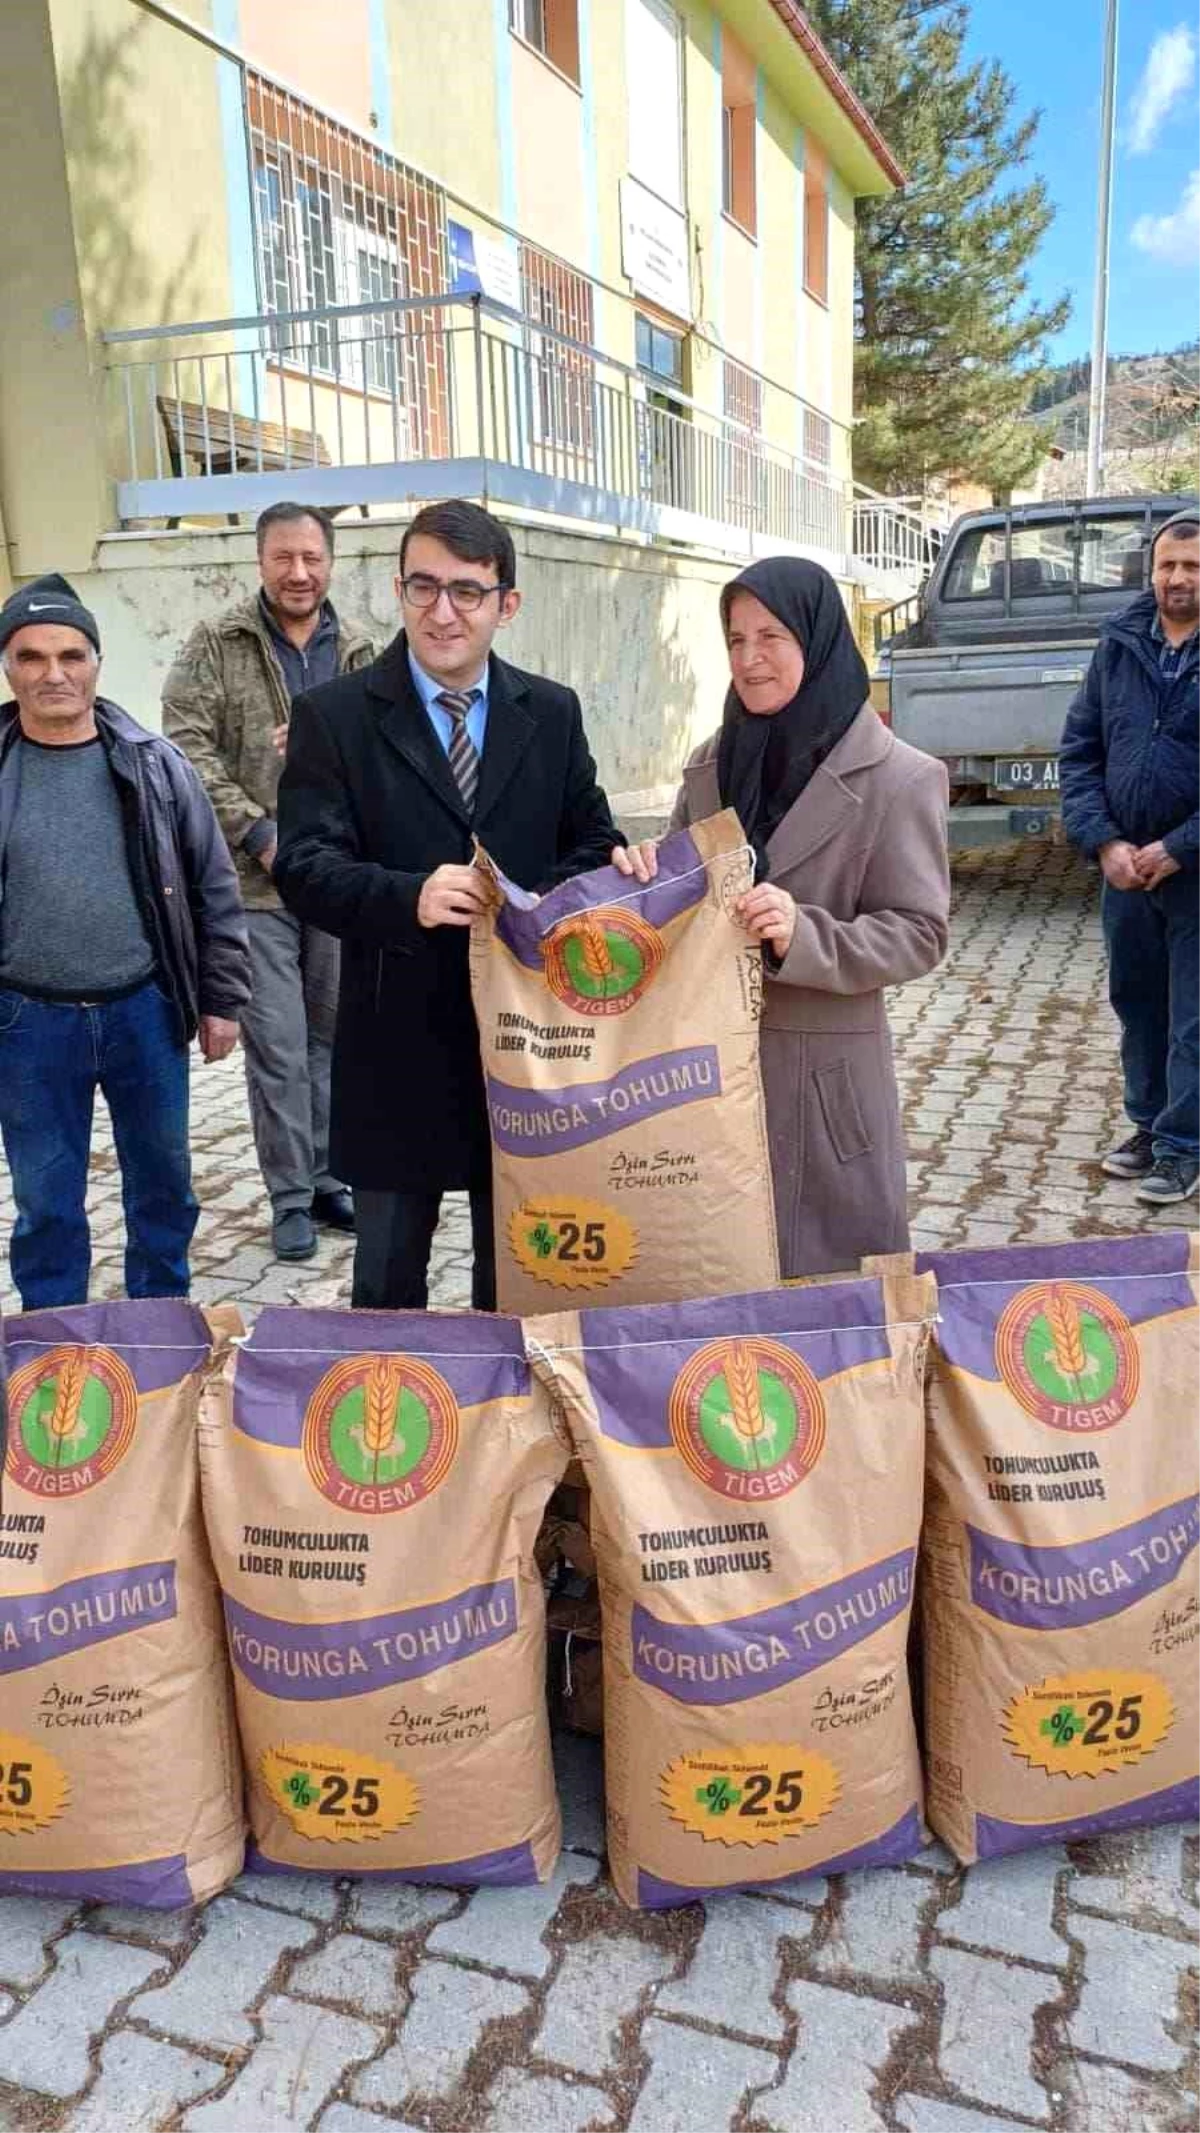 Afyonkarahisar Hocalar ilçesinde çiftçilere devlet destekli korunga tohumu dağıtıldı